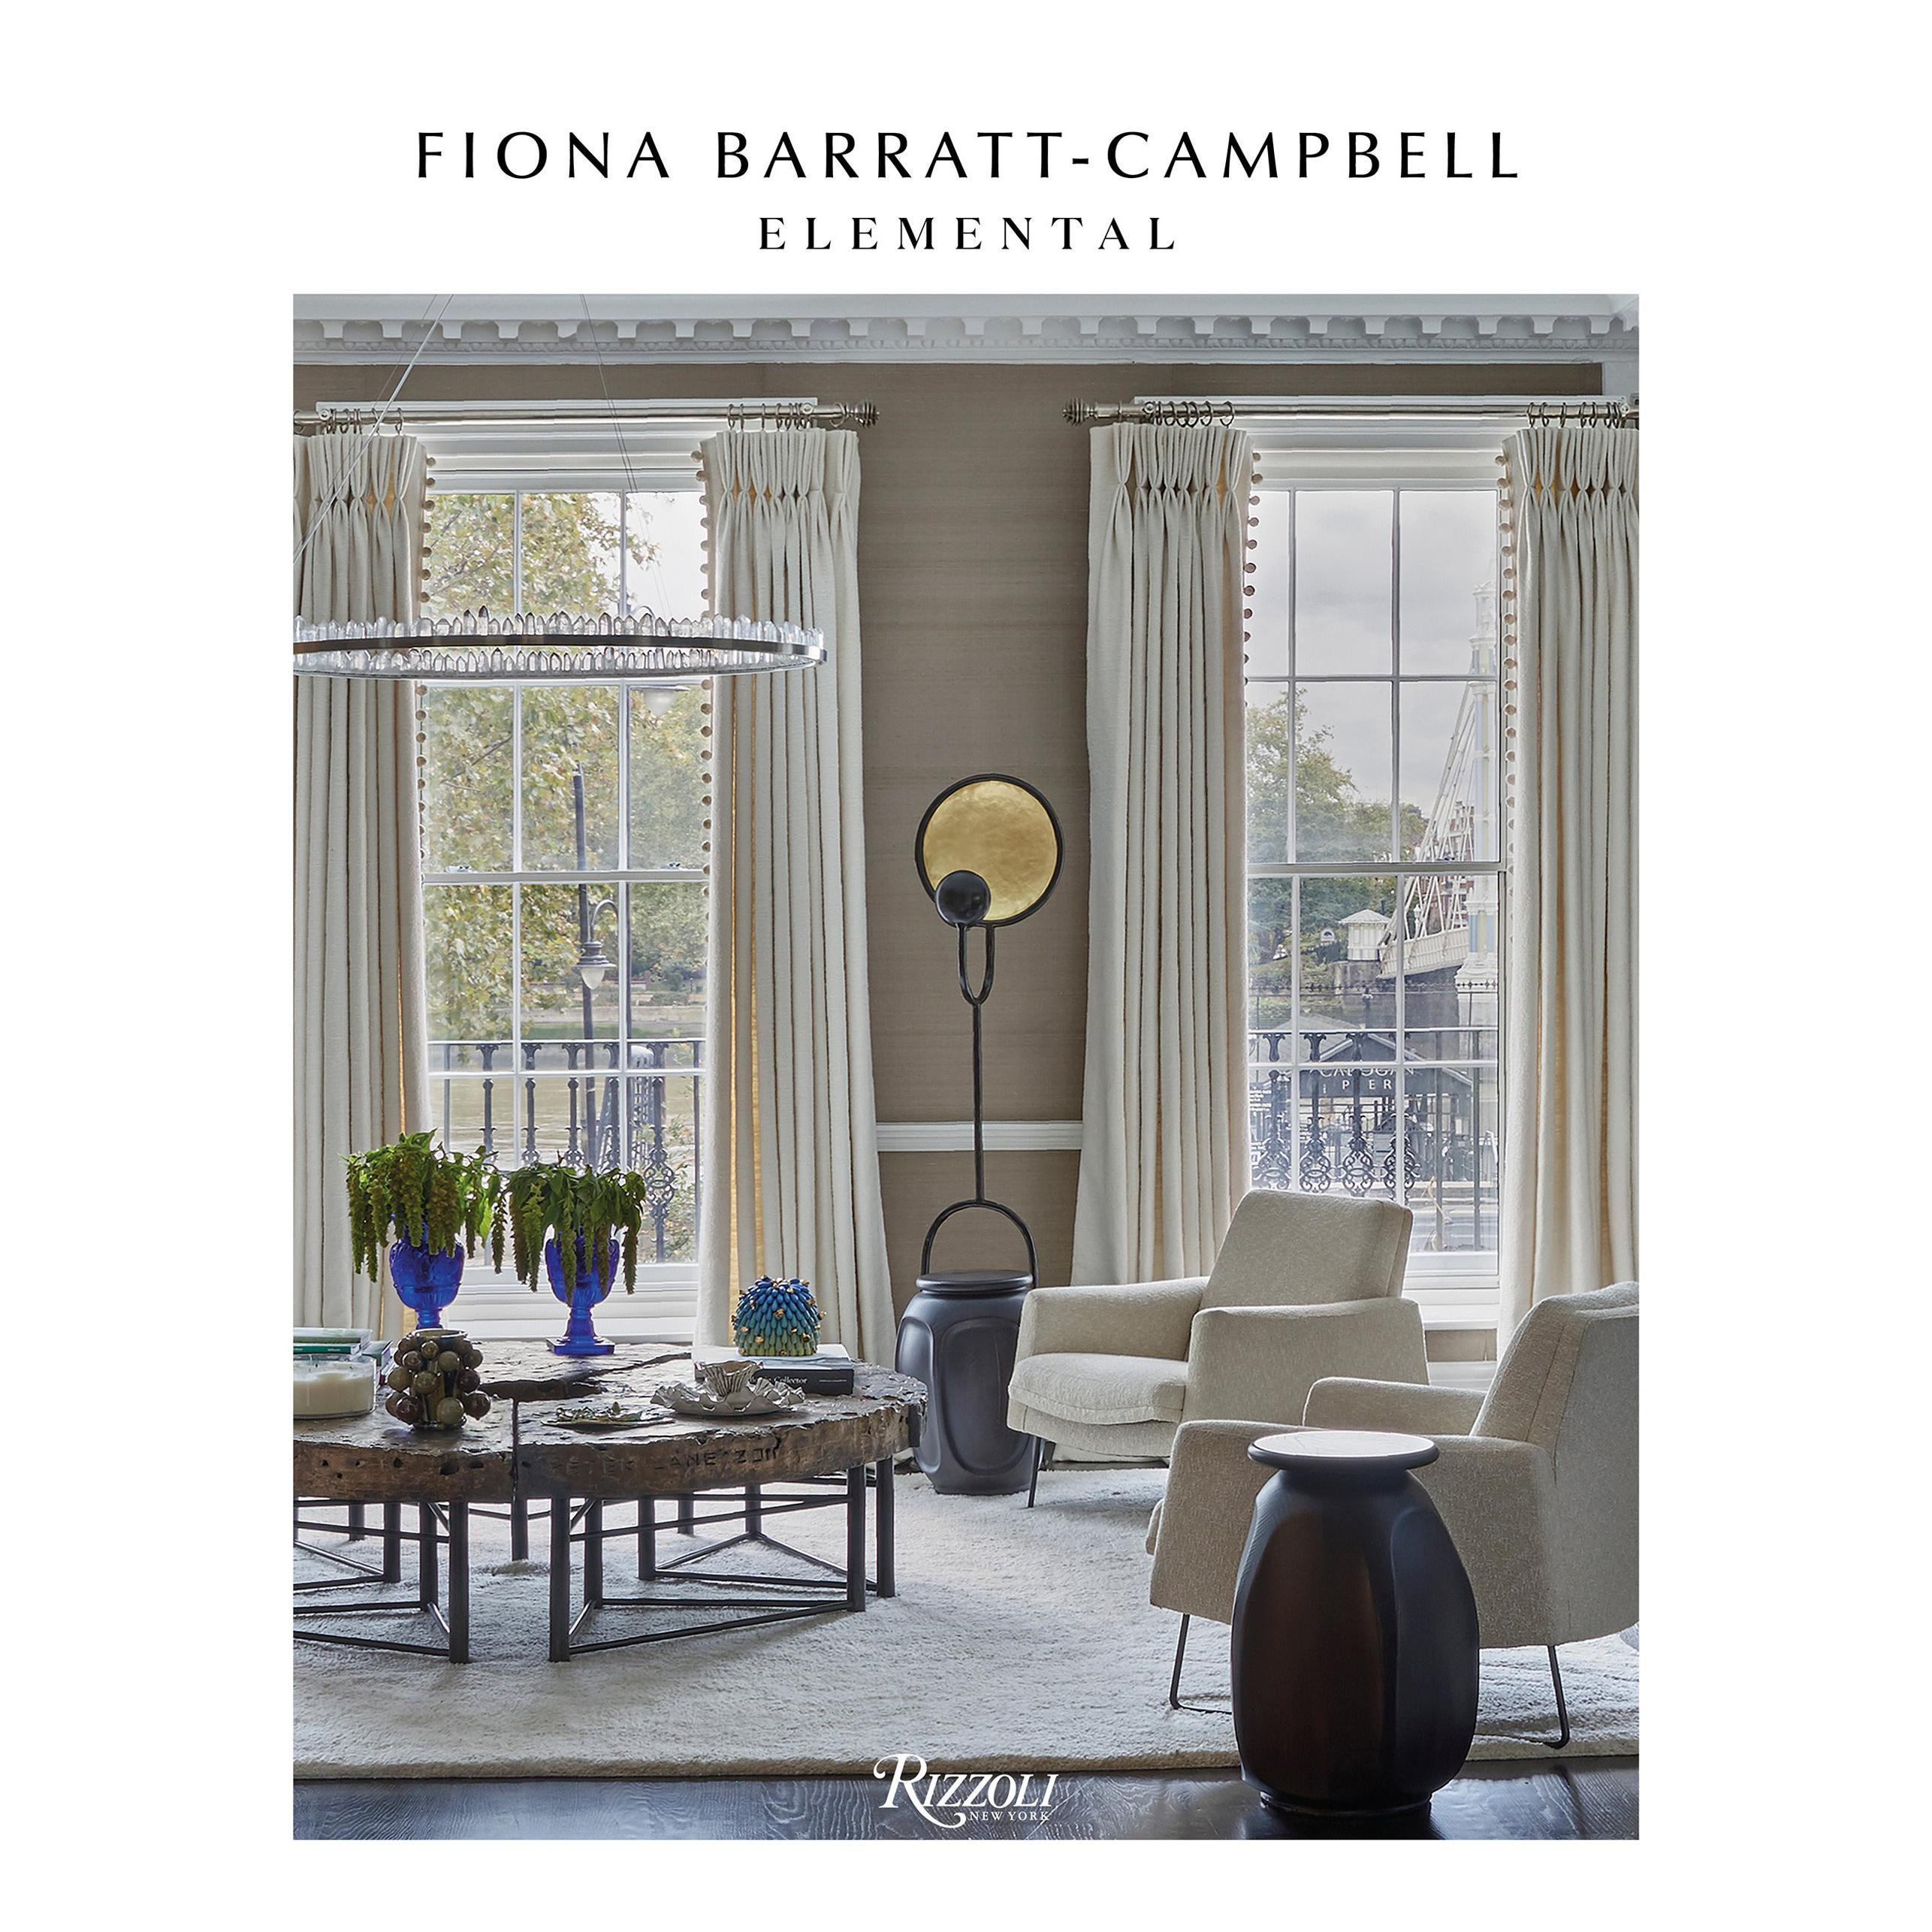 Elementarer Barratt-Campbell von Fiona Barratt